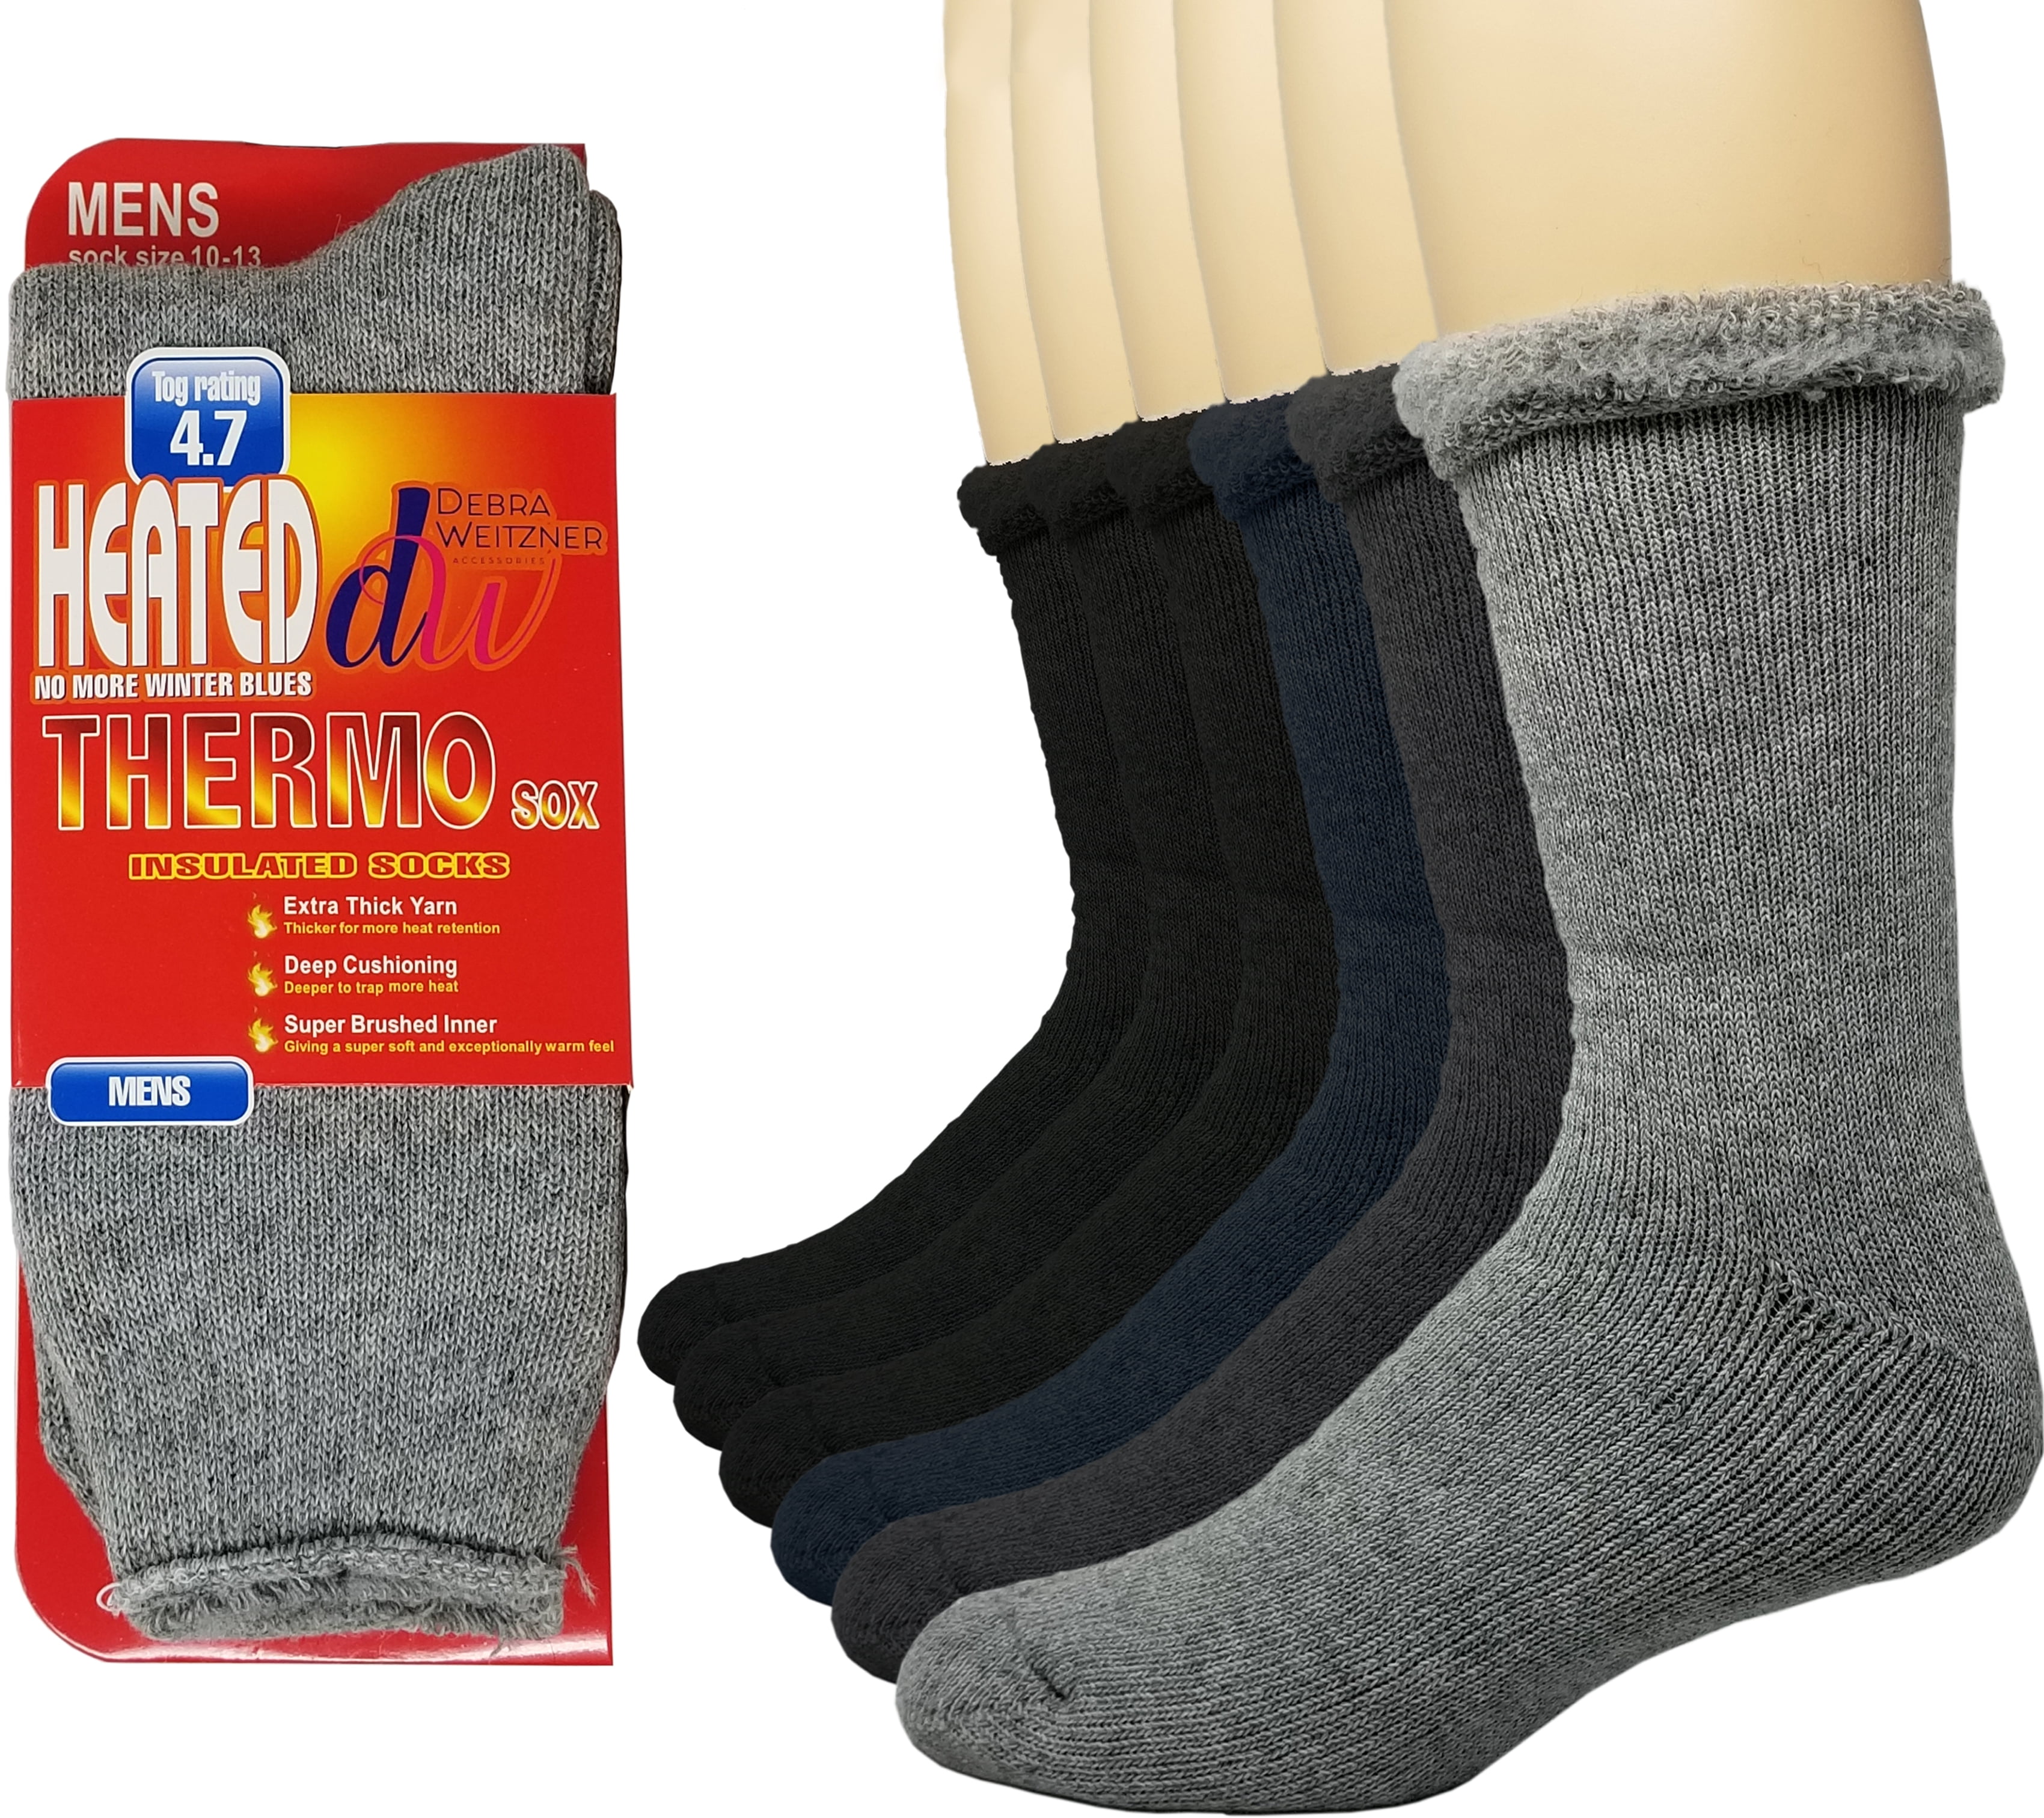 Debra Weitzner - Debra Weitzner Thermal Socks For Men and Women Heated ...